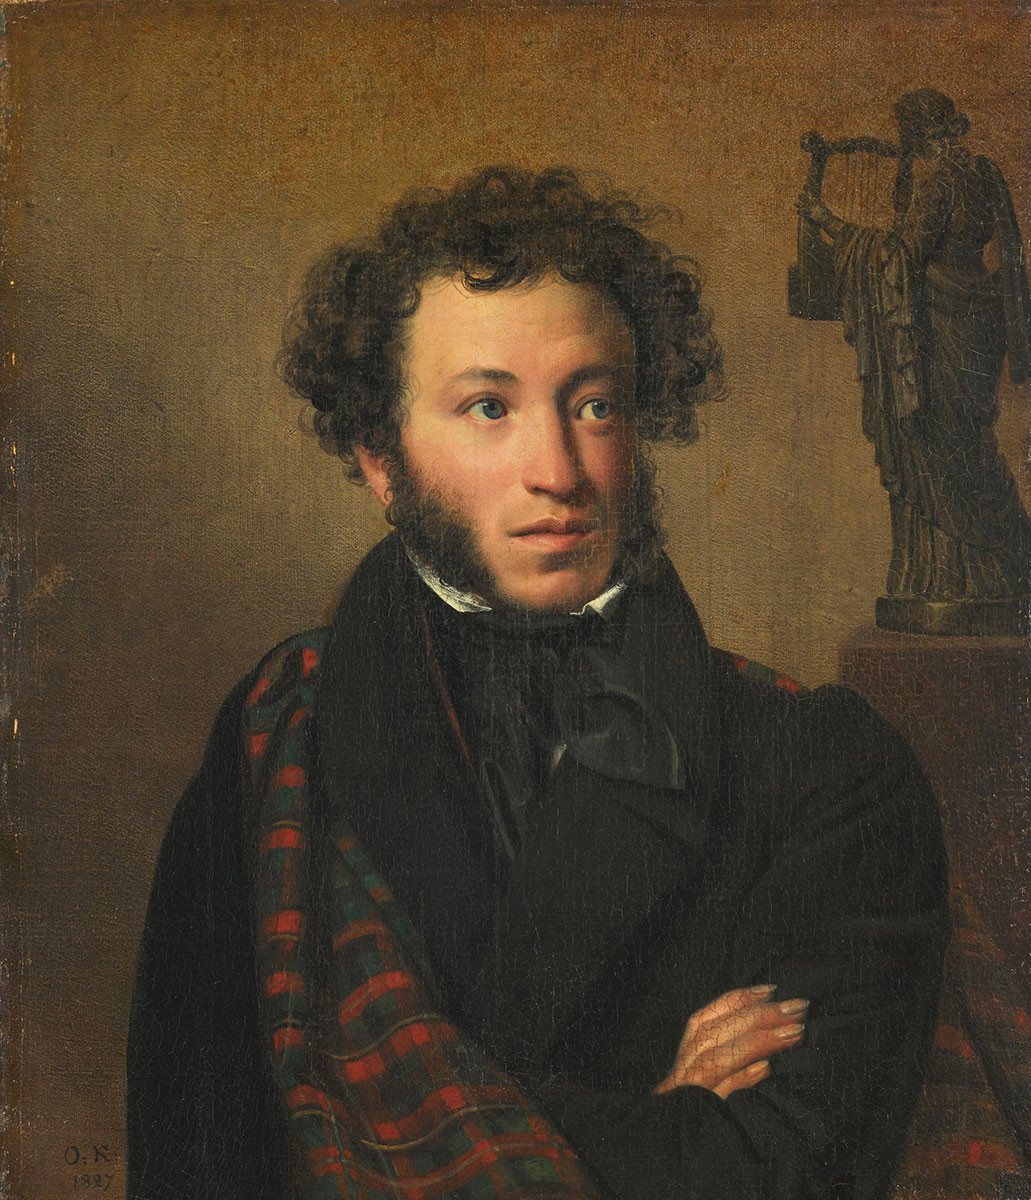 Retrato de Alexánder Pushkin, por Orest Kiprenski, 1827.